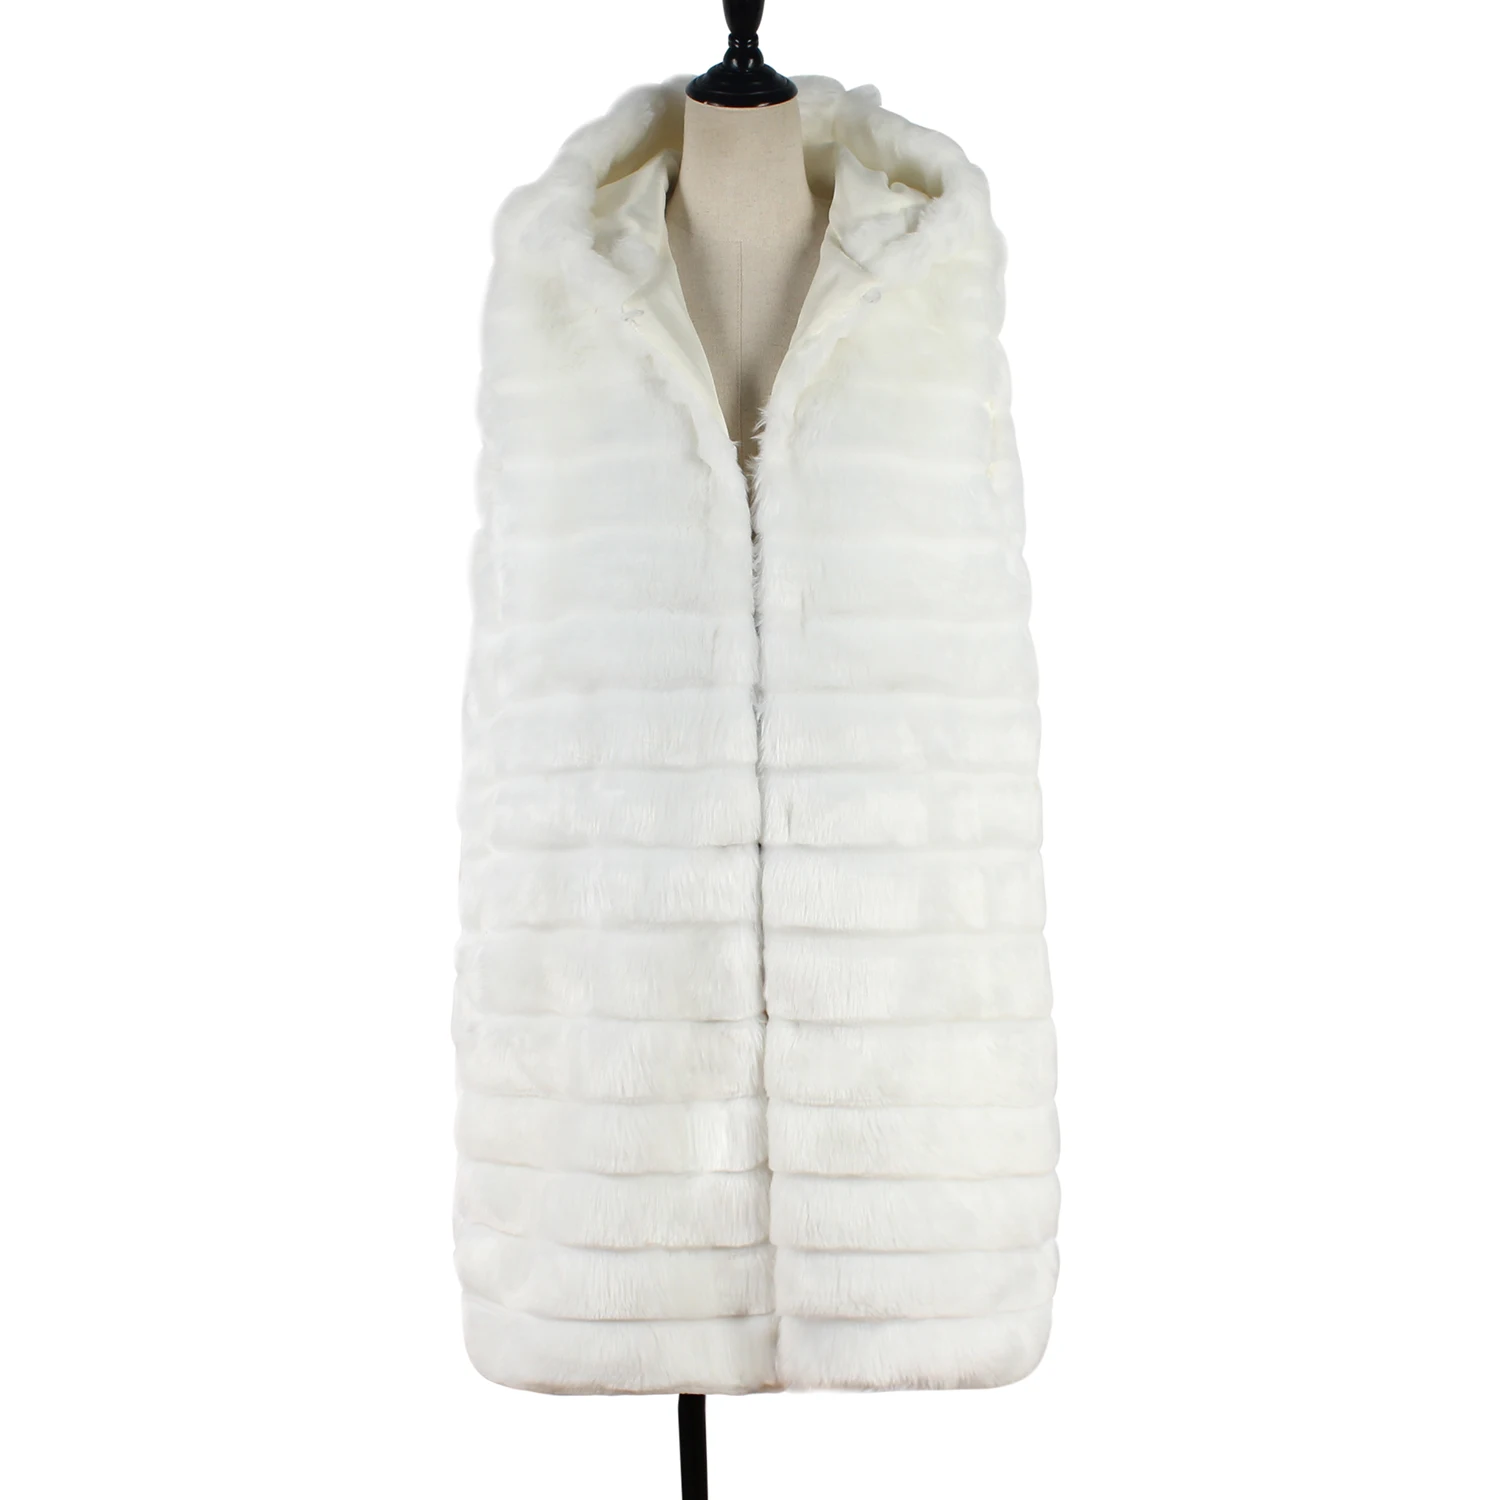 CALOFE Осень Зима Новое Женское пальто теплая куртка из искусственного меха Верхняя одежда без рукавов с капюшоном длинное одноцветное пальто размер S-3XL